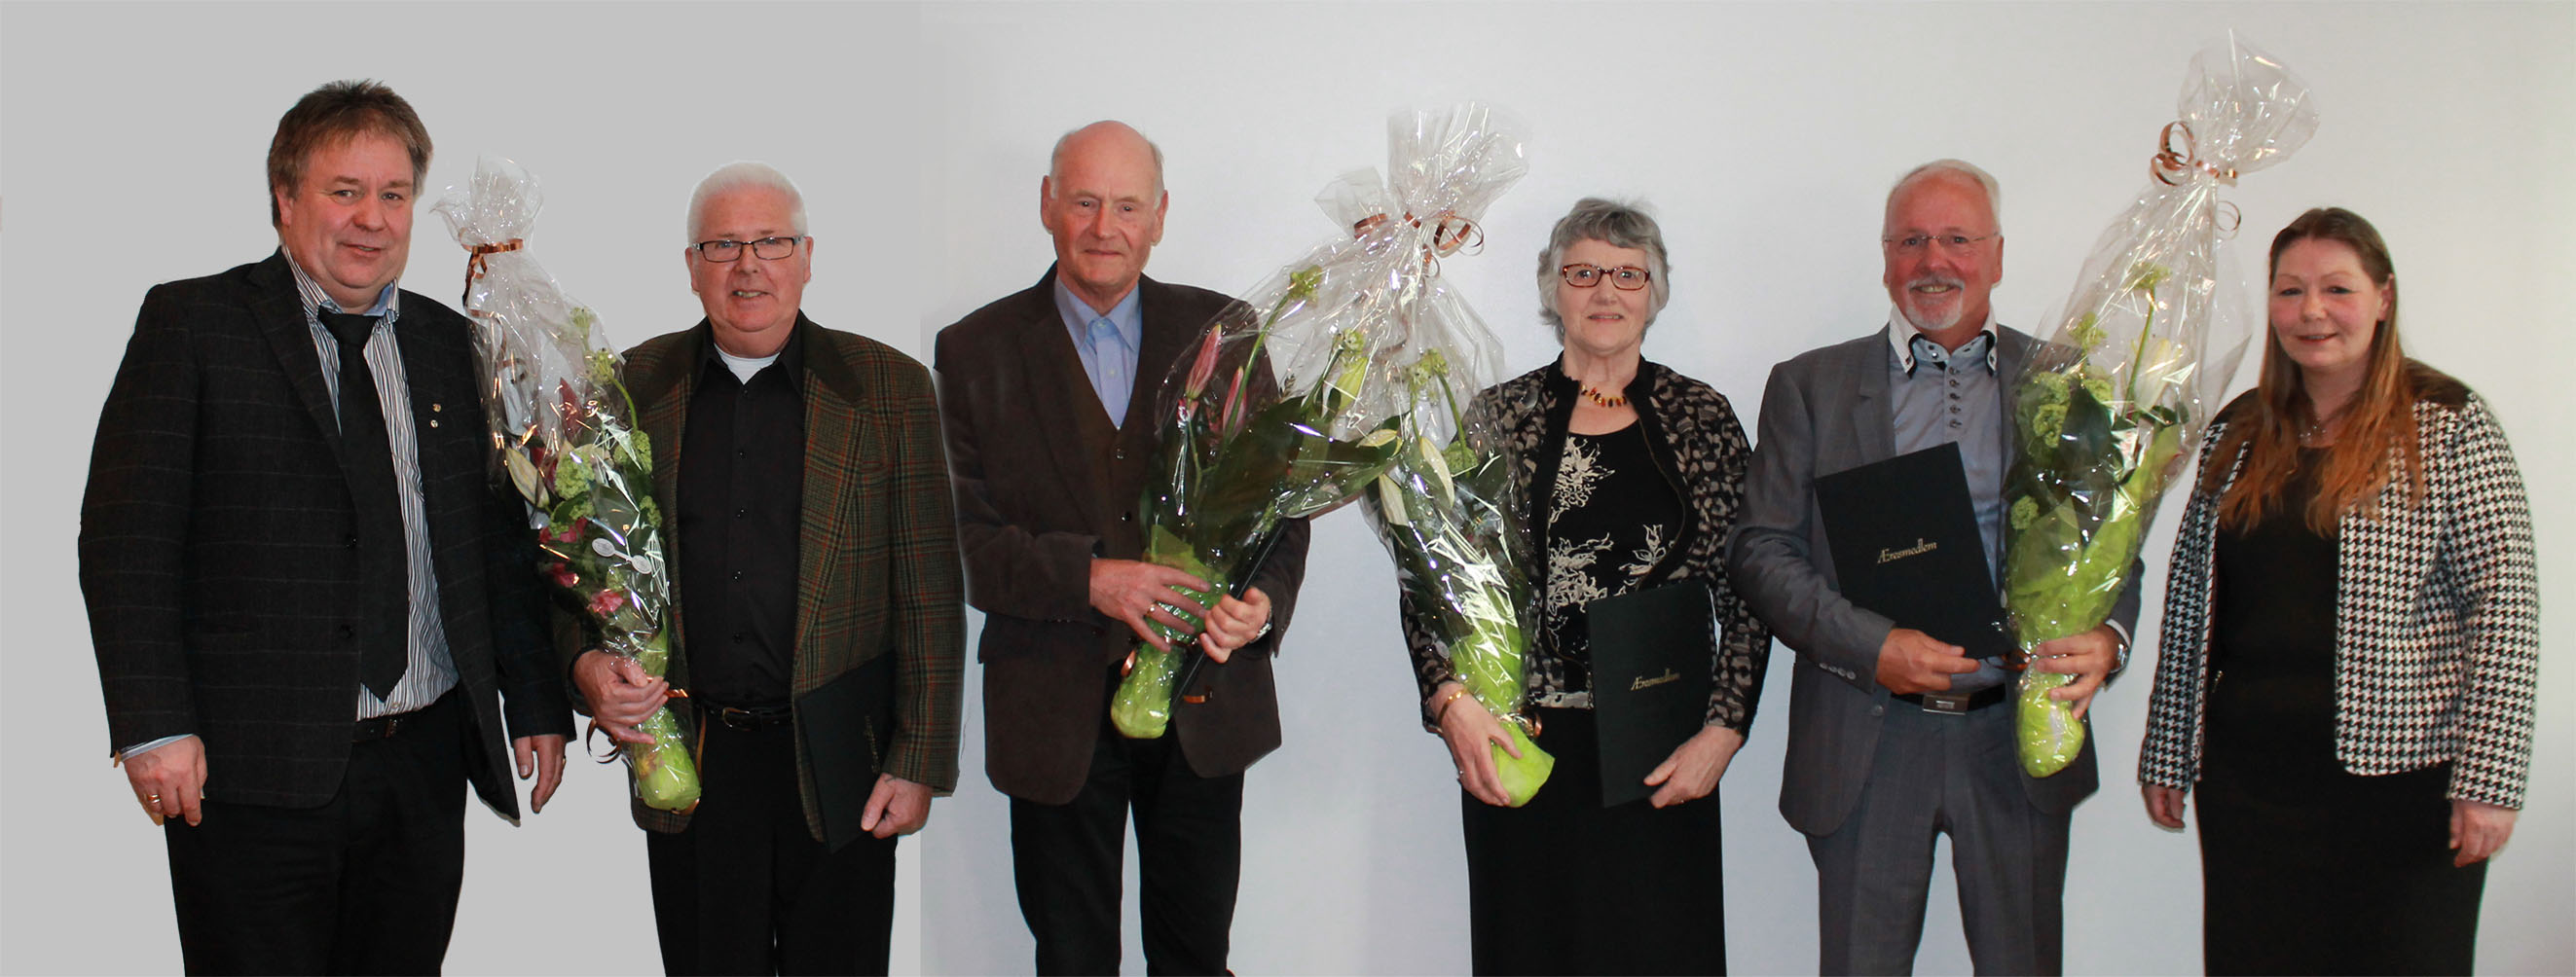 Fra venstre: Geir Olsen,45 års jubilantene Viktor Vindal, Olav Sture, Thorill Teigenes, Nils Albert Lokøen og leder Eirin Bratland